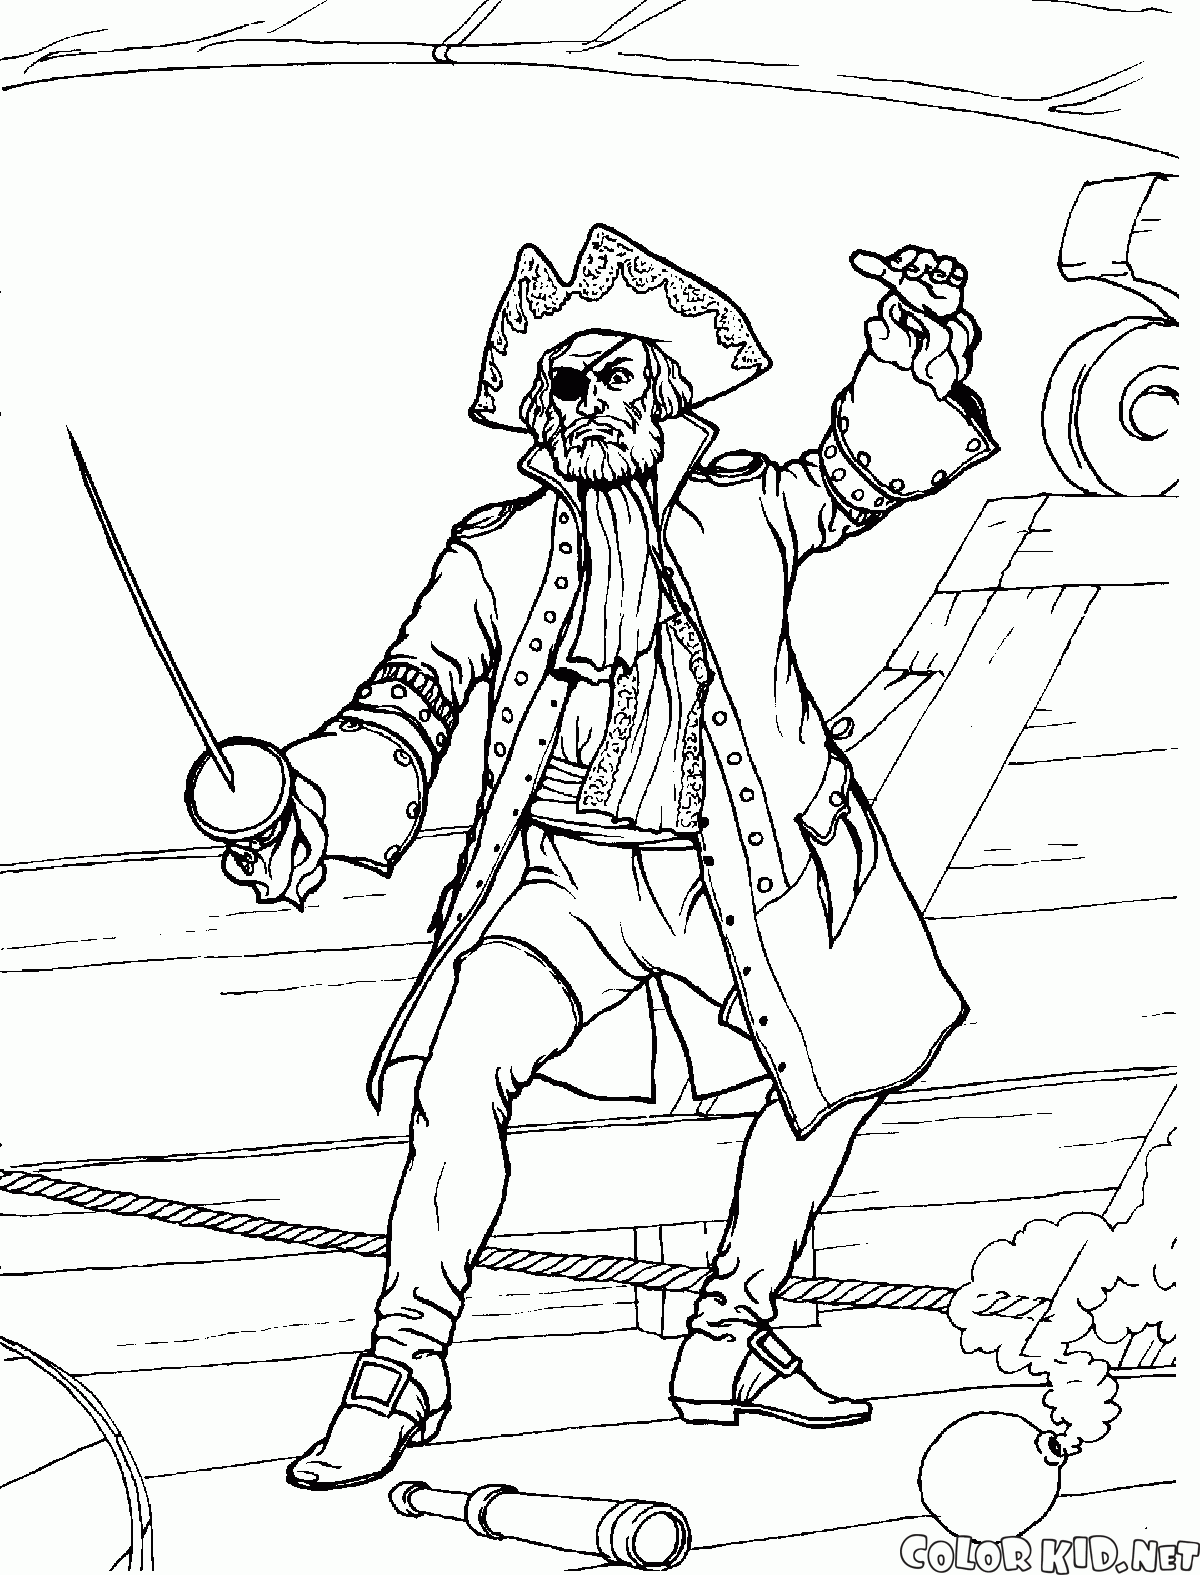 Pirate Zäune